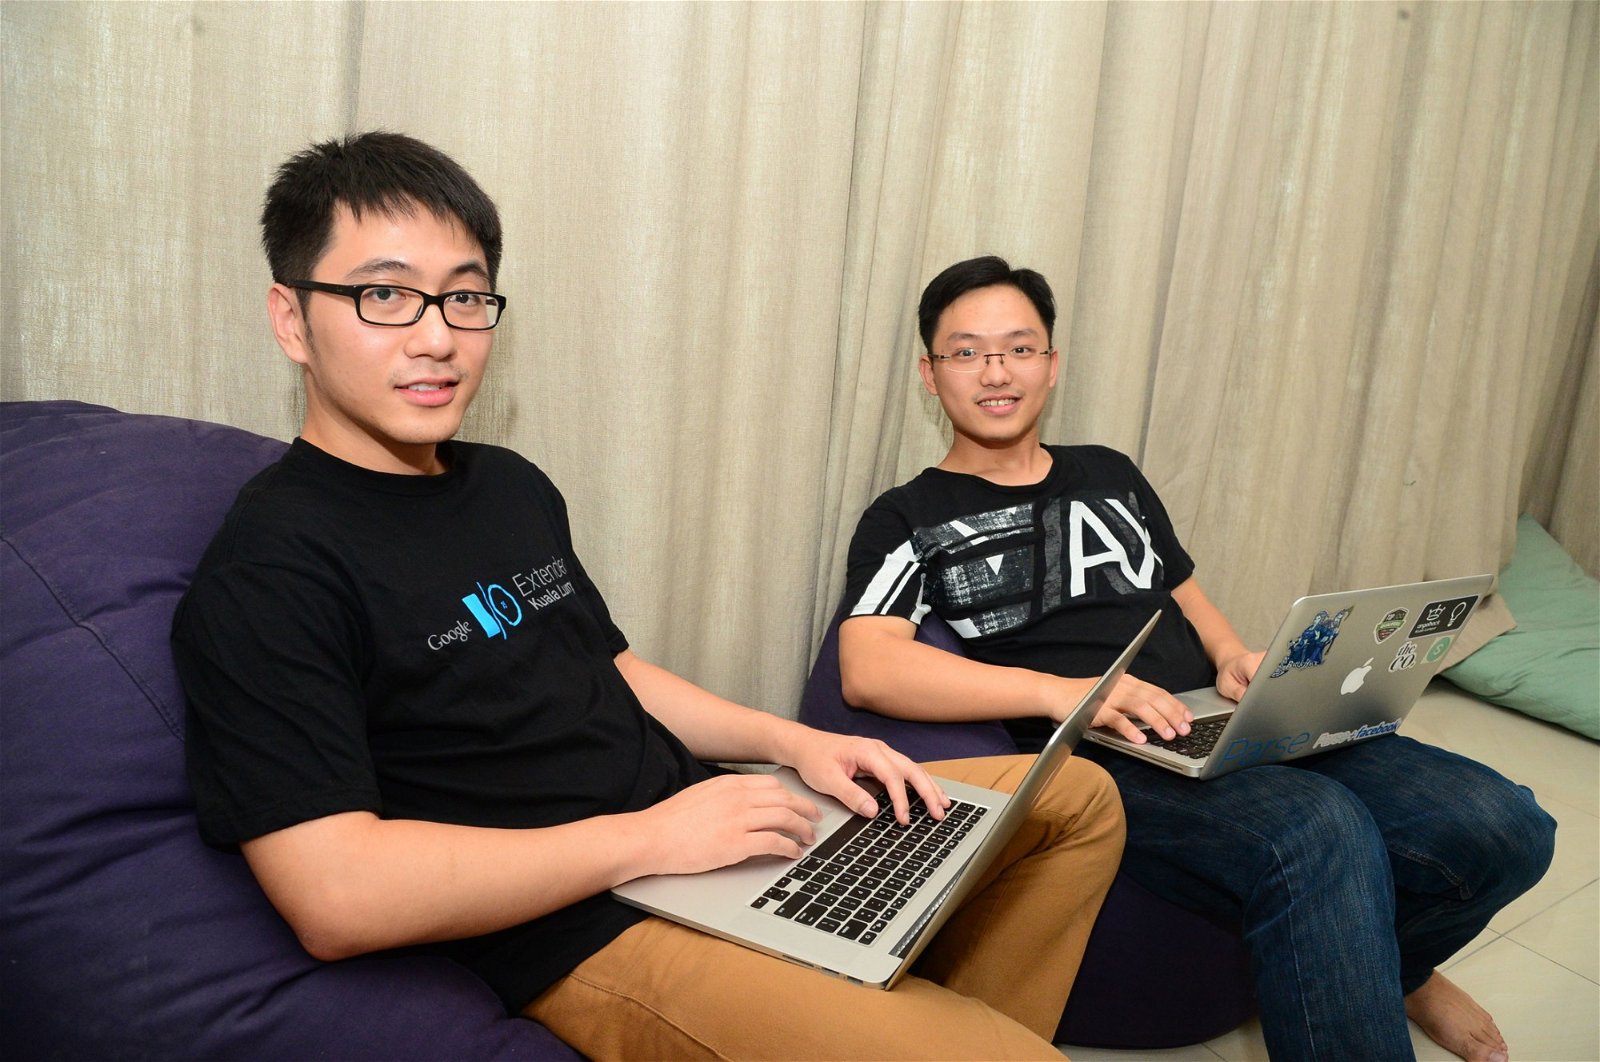 旅游佳（TourPlus）的共同创办人符芳凯（左）和吴厚汶是新兴创业者，俩人同样留学国外，当初回流国内就旨在想为本地带来不一样的新事物。